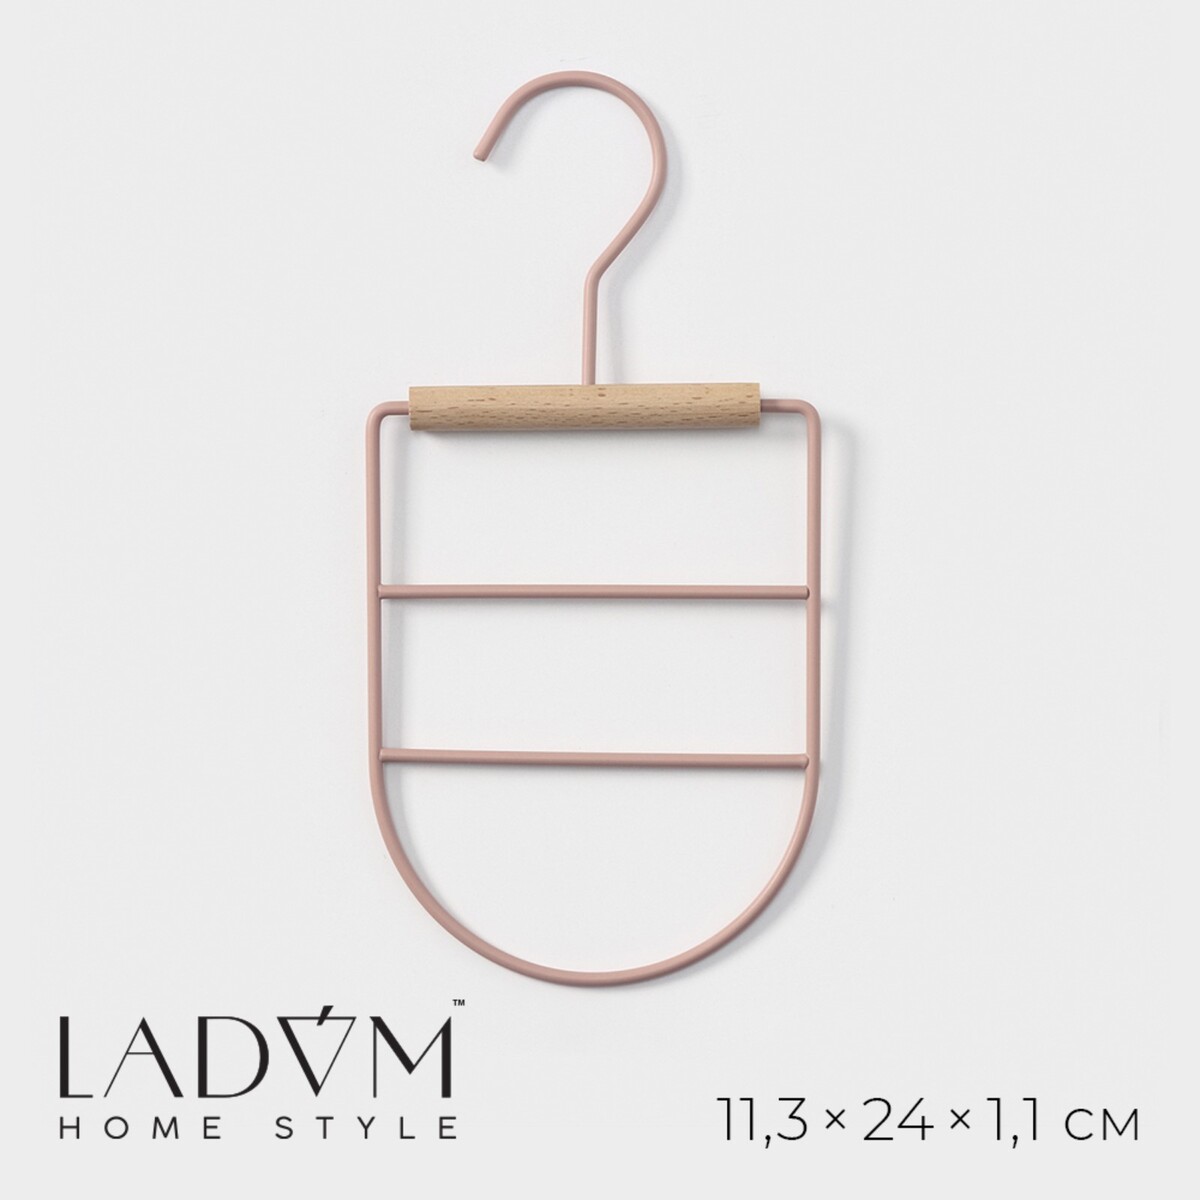 Вешалка органайзер для ремней и шарфов многоуровневая ladо́m laconique, 11,5×23×1,1 см, цвет розовый вешалка органайзер для ремней и шарфов многоуровневая ladо́m laconique 11 3×24×1 1 см белый